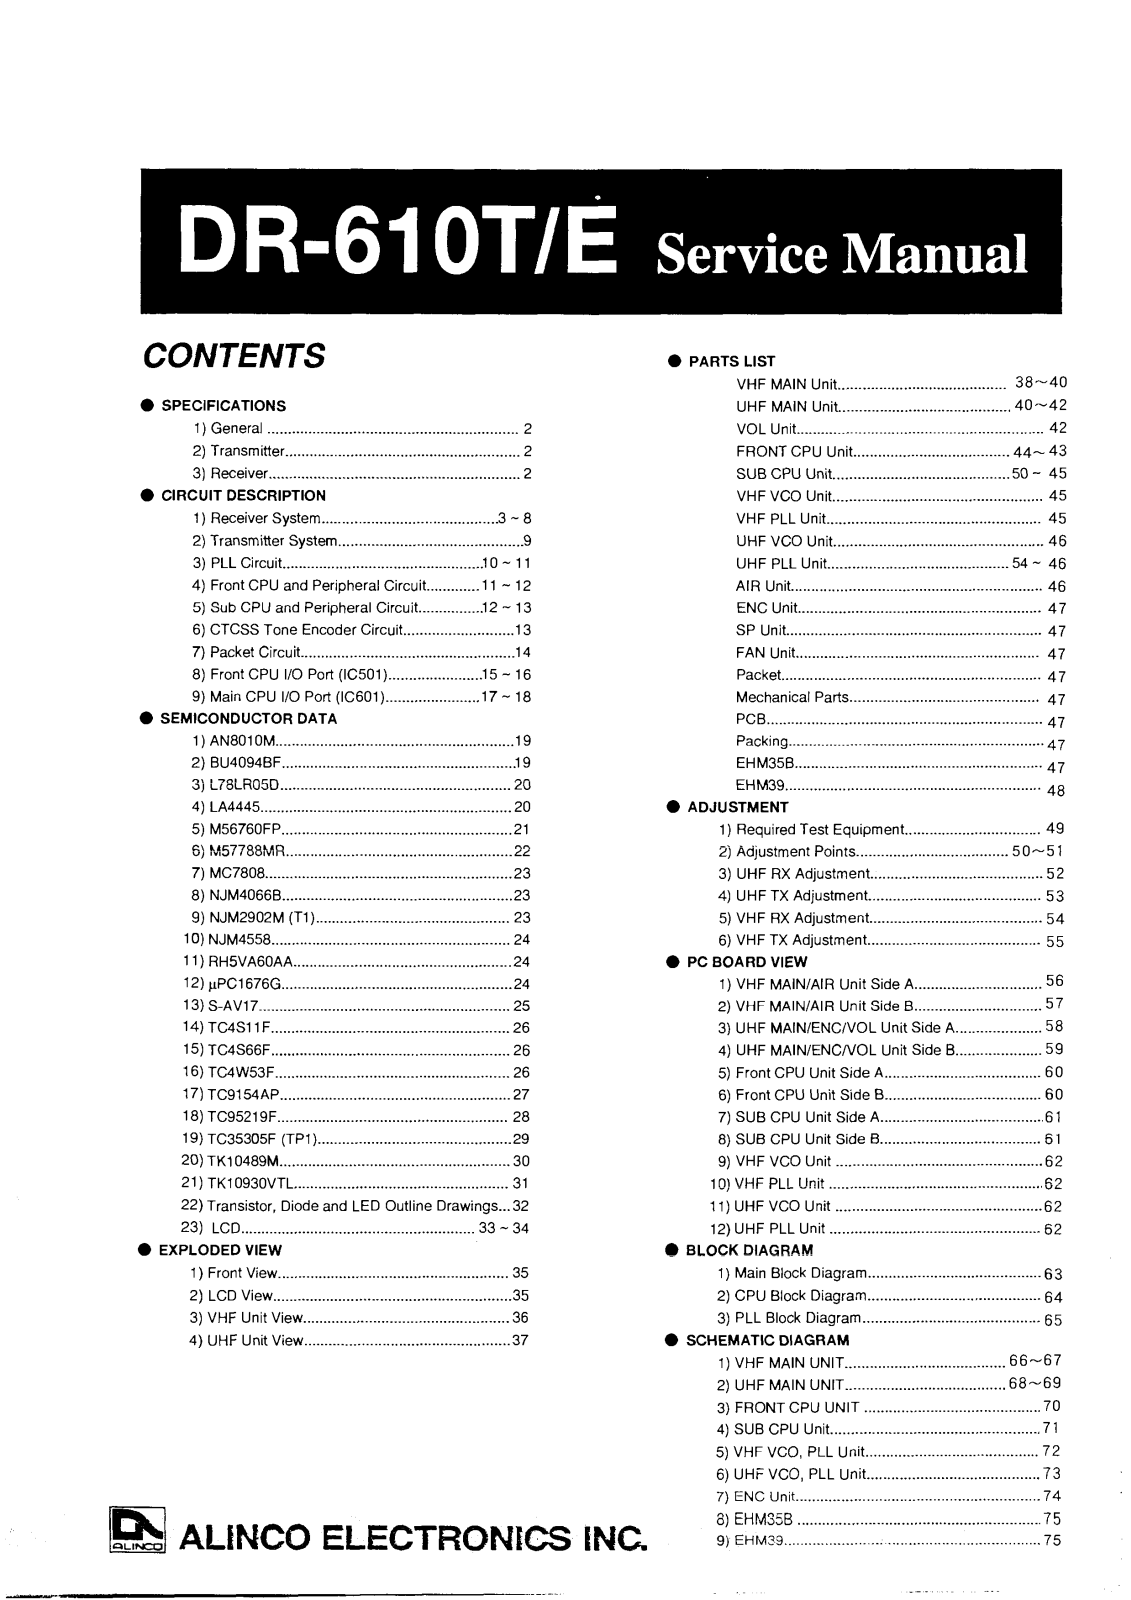 Alinco DR-610E, DR-61OT Service Manual